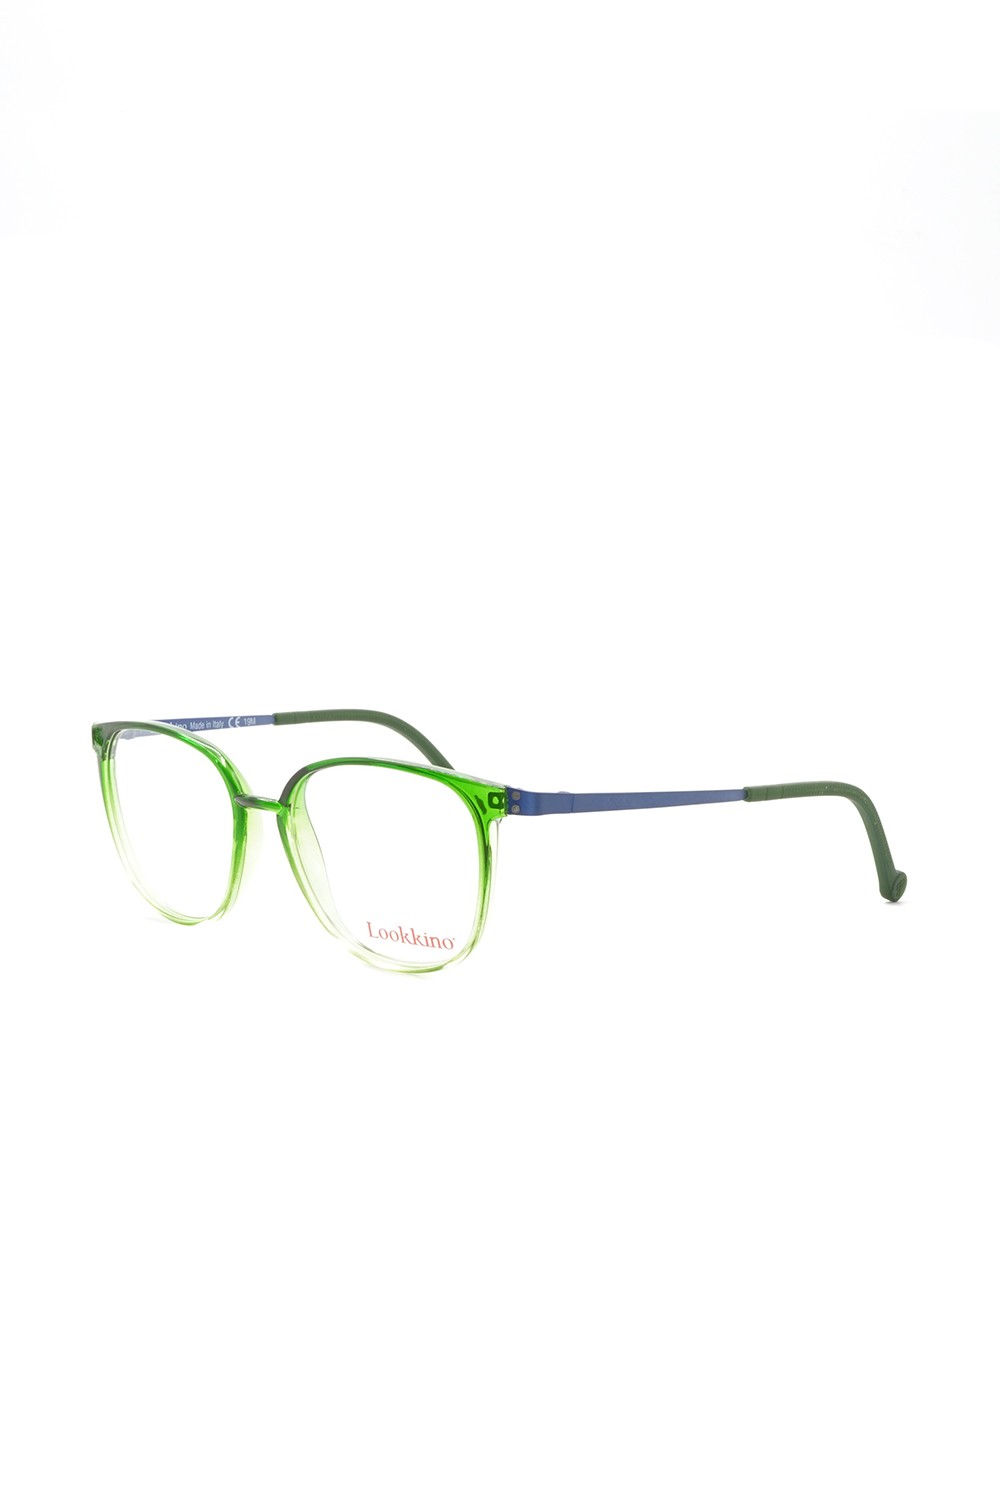 Lookkino - Occhiali da vista in plastica squadrati per bambini verde - 3852 W1